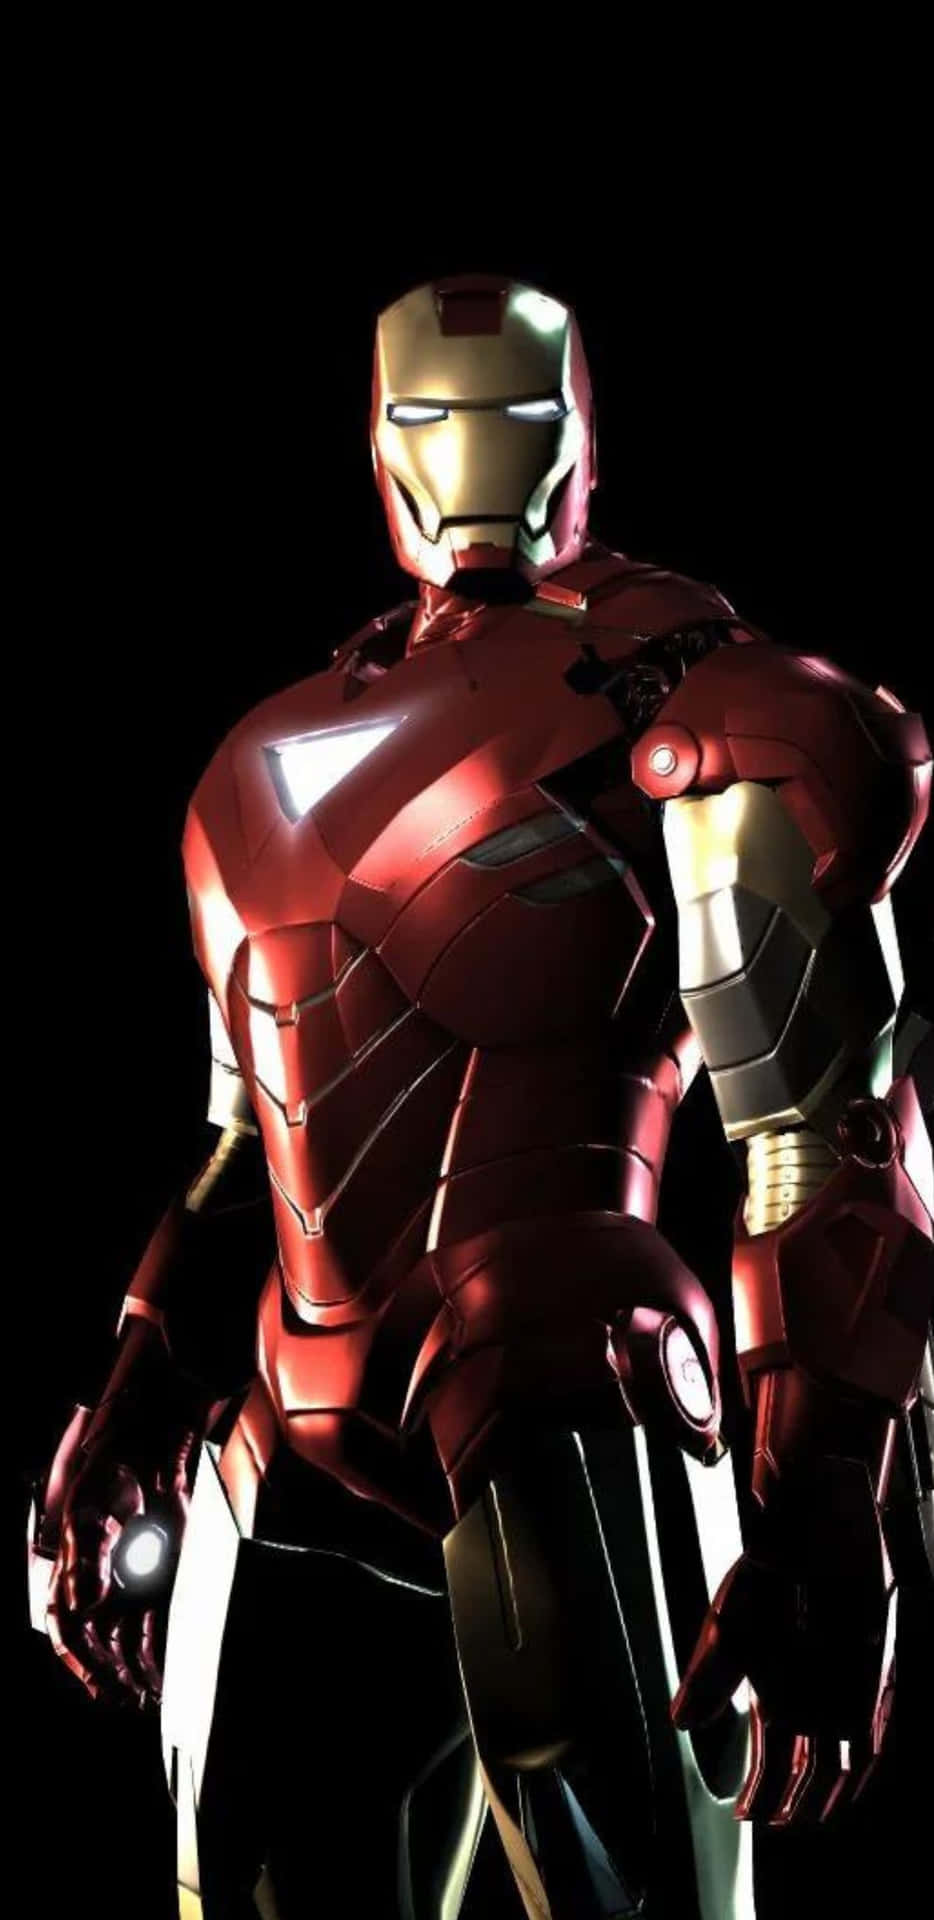 Fondode Pantalla Del Pixel 3xl Con El Reactor Triangular De Iron Man.